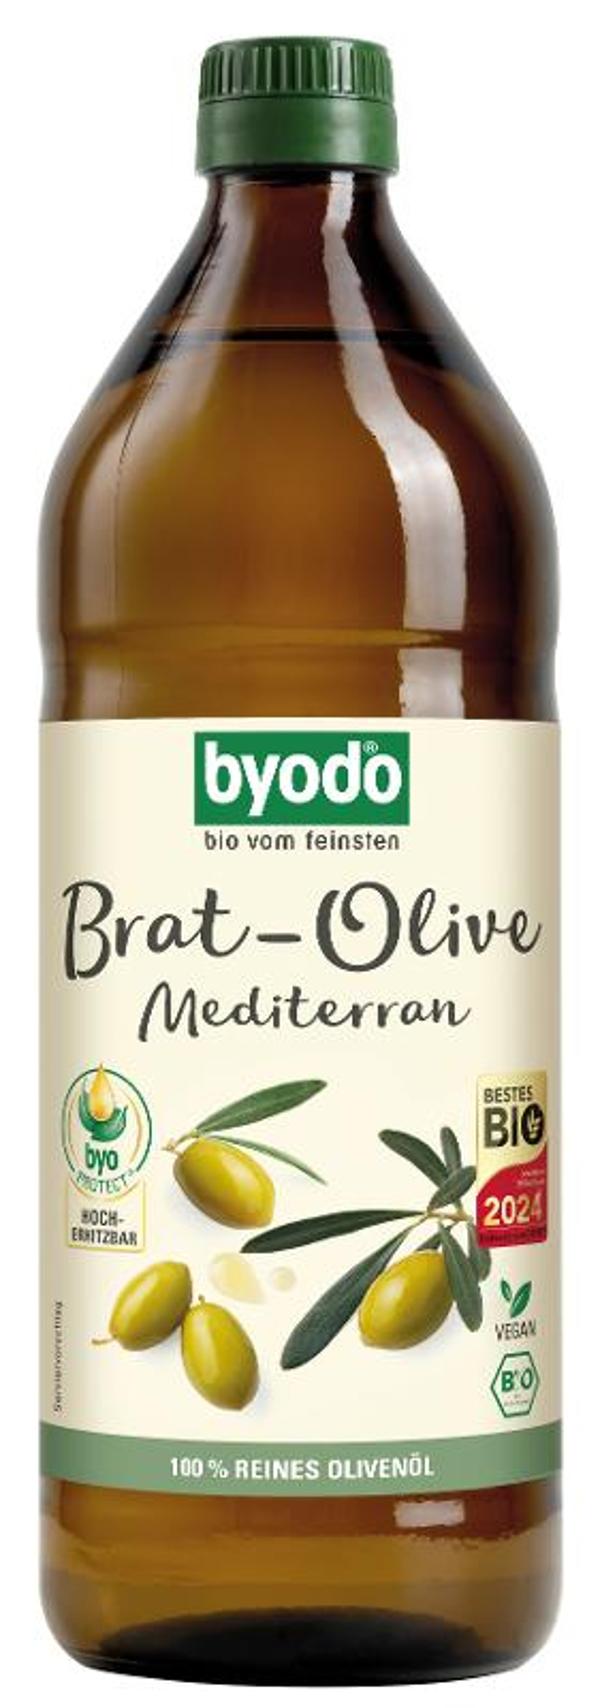 Produktfoto zu Brat Olive mediterran